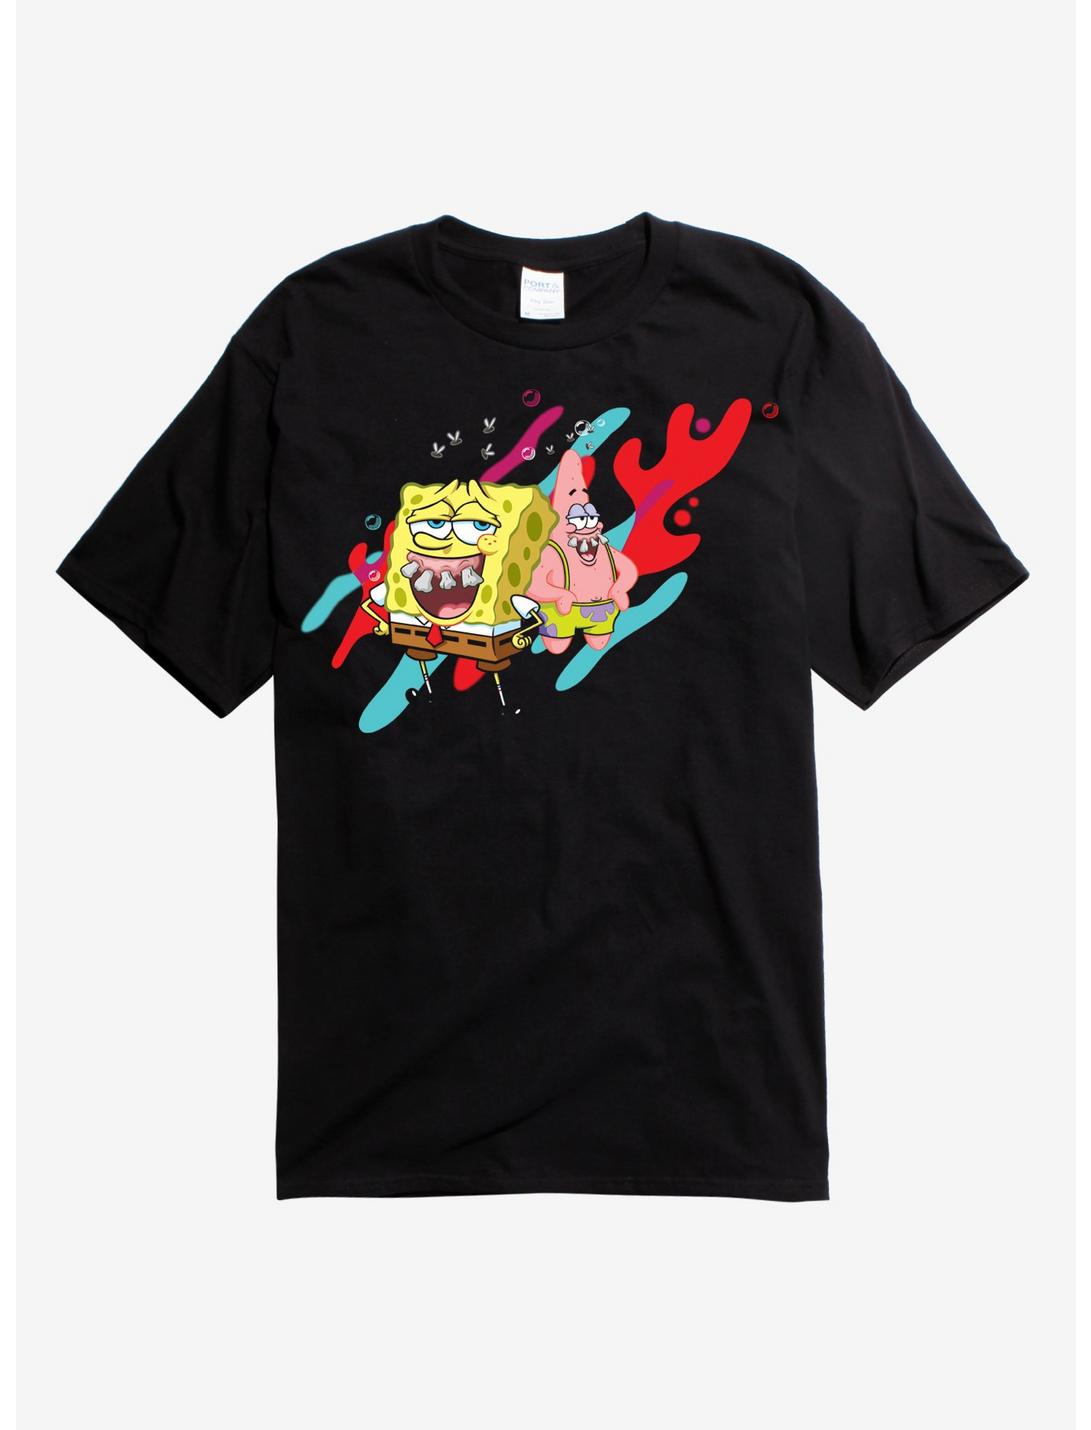 SpongeBob & Patrick Teeth Blk T-Shirt, , hi-res